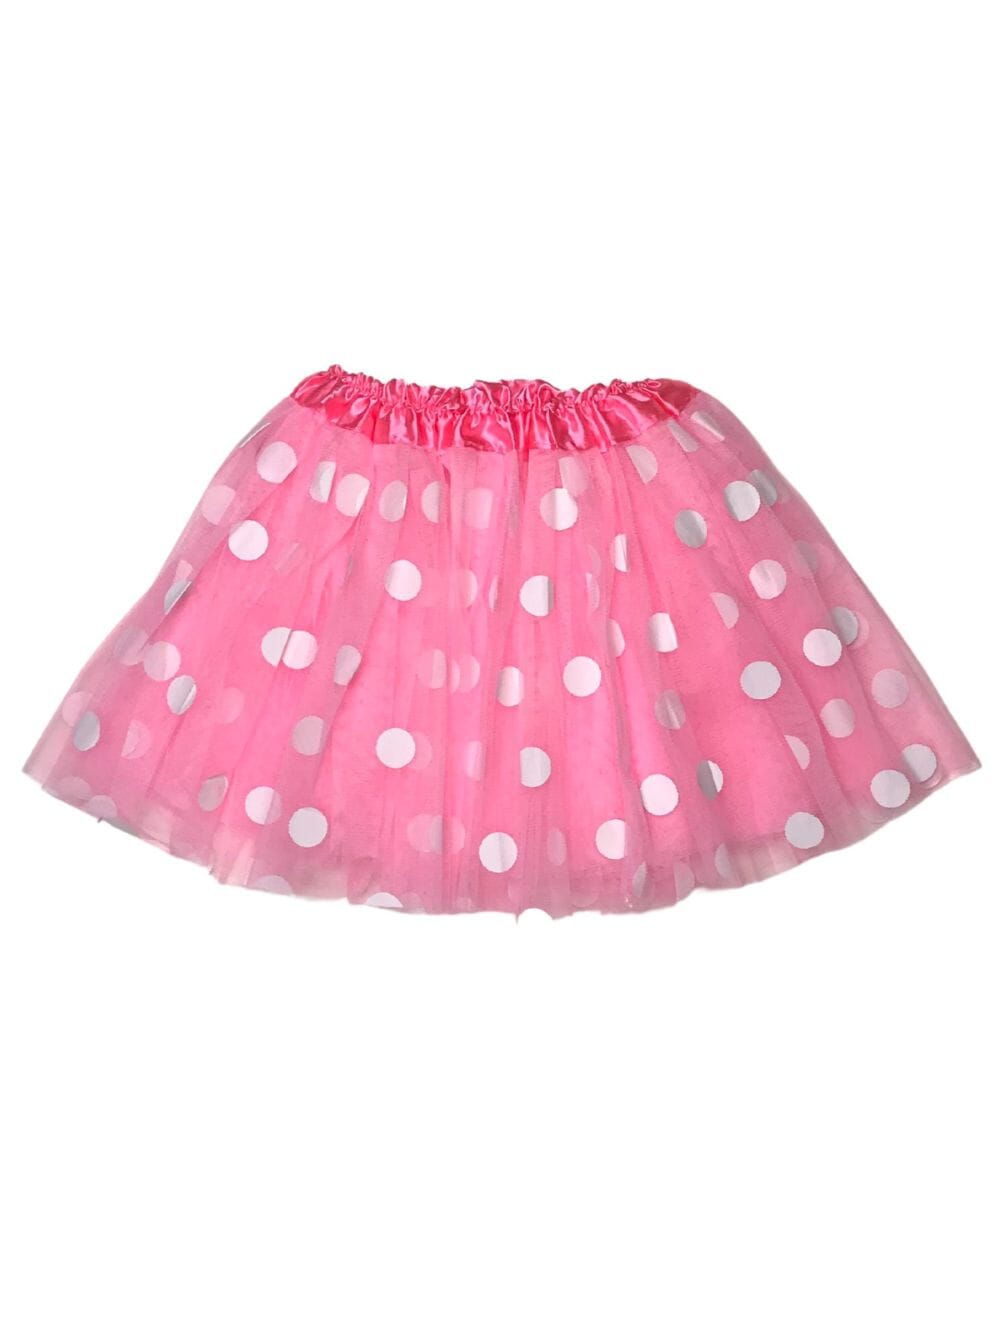 Pink and White Polka Dot Tutu Skirt Costume for Girls, Women, Plus - Sydney So Sweet